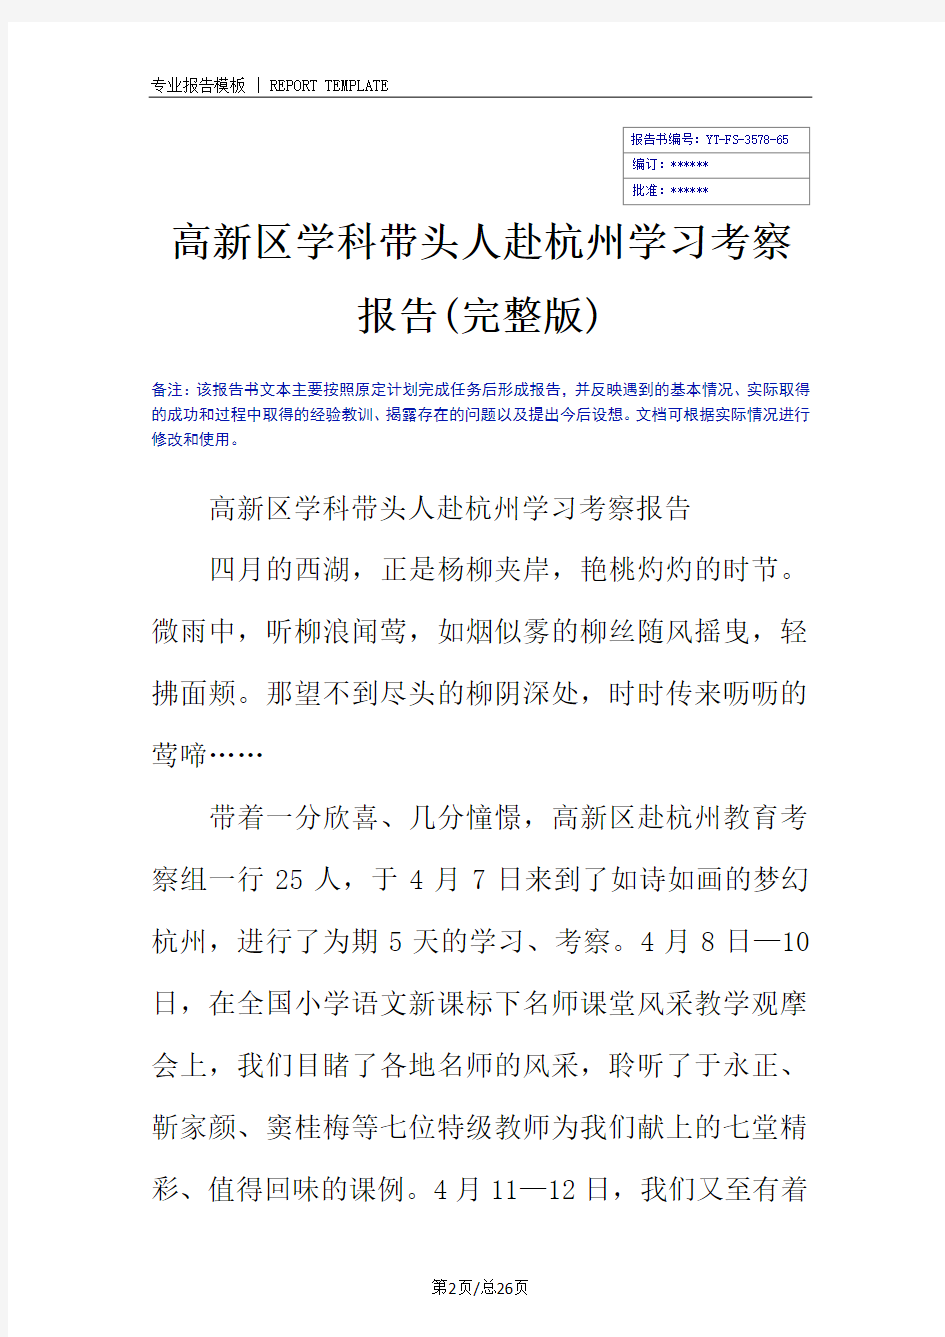 高新区学科带头人赴杭州学习考察报告(完整版)_1